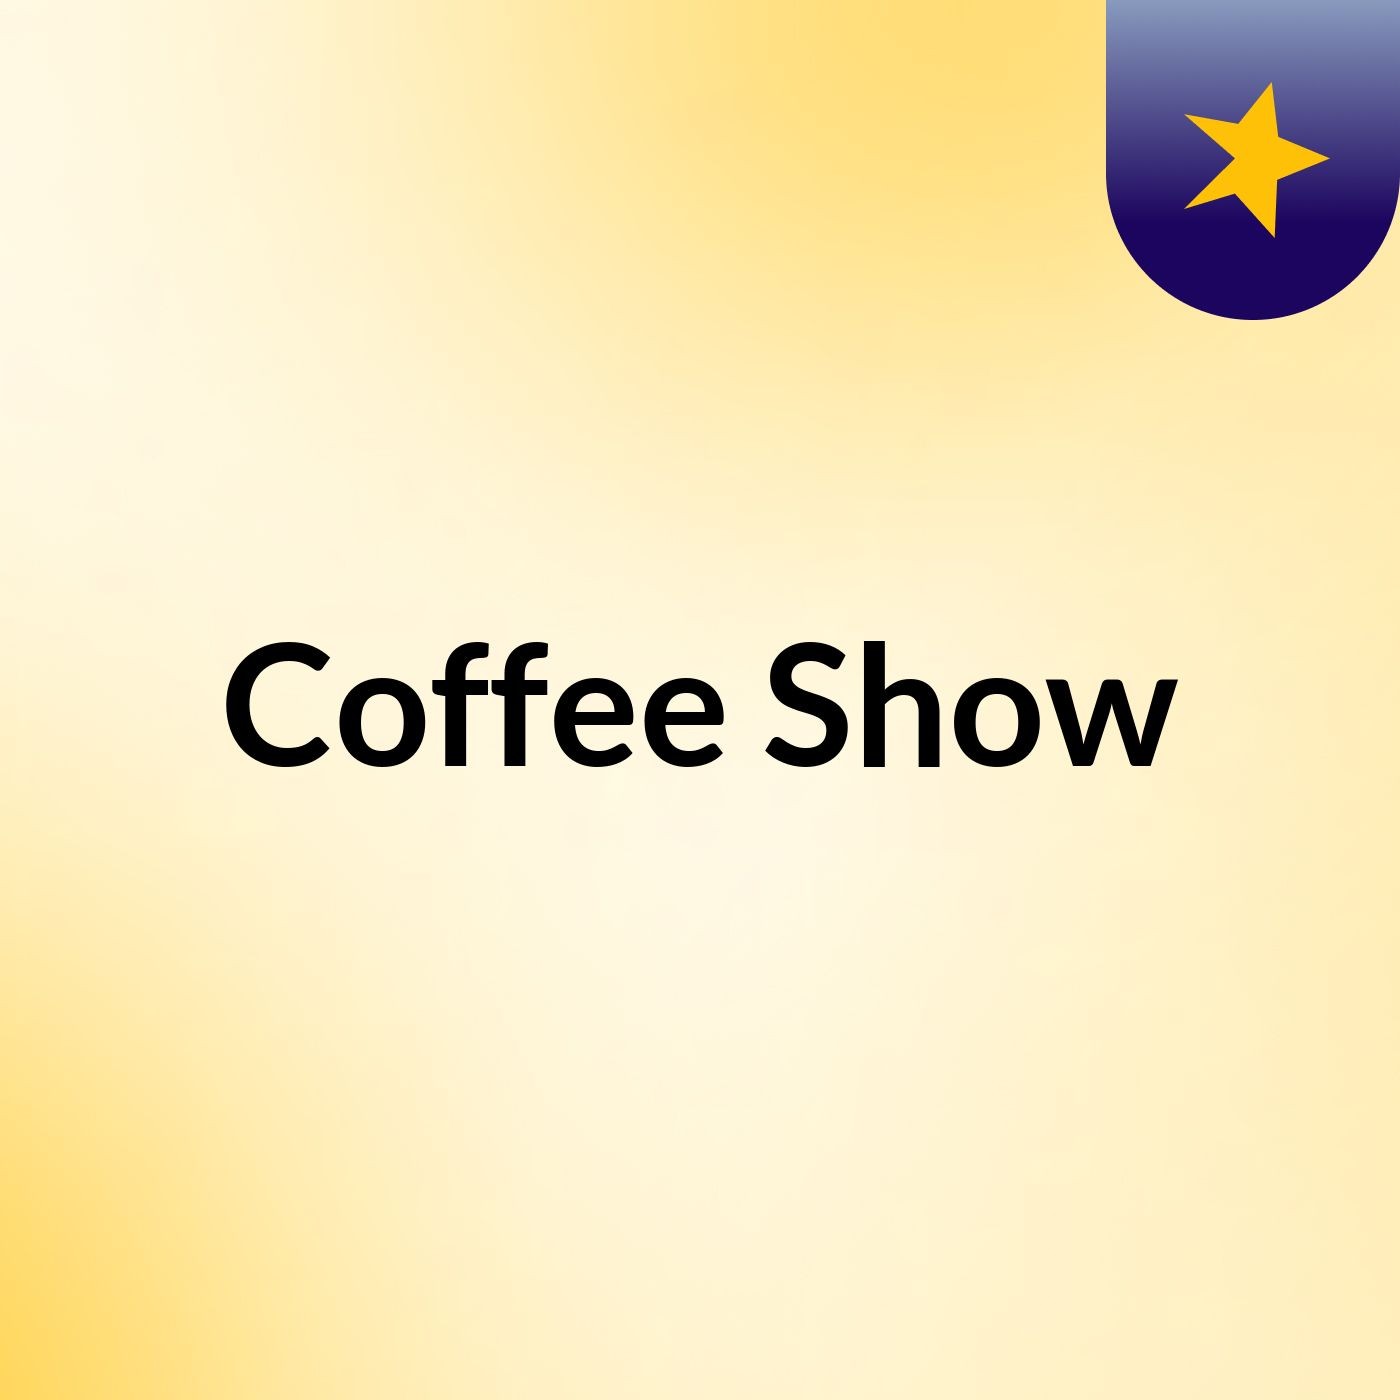 Coffee Show